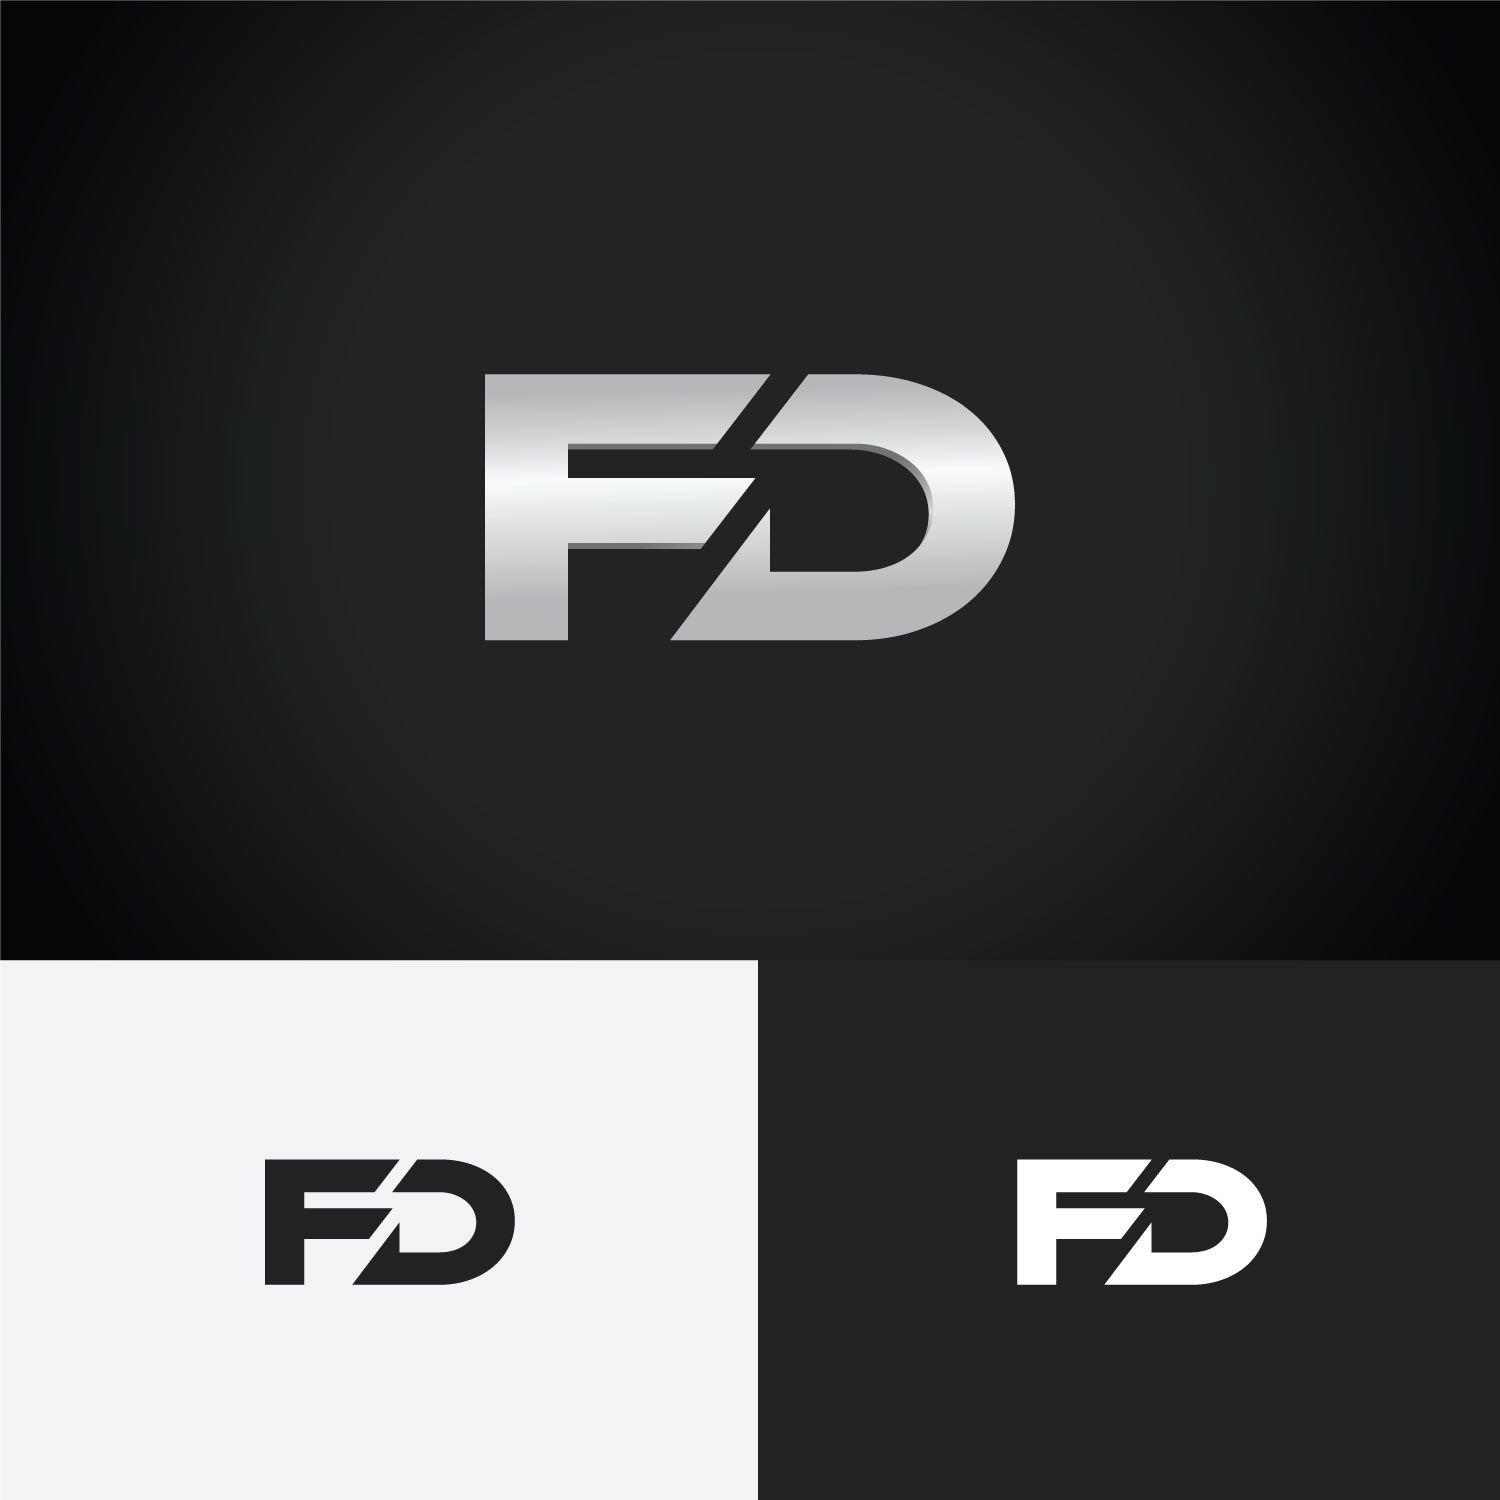 Fd Logo - Bold, Modern, Home Builder Logo Design for FD by karthika vs ...